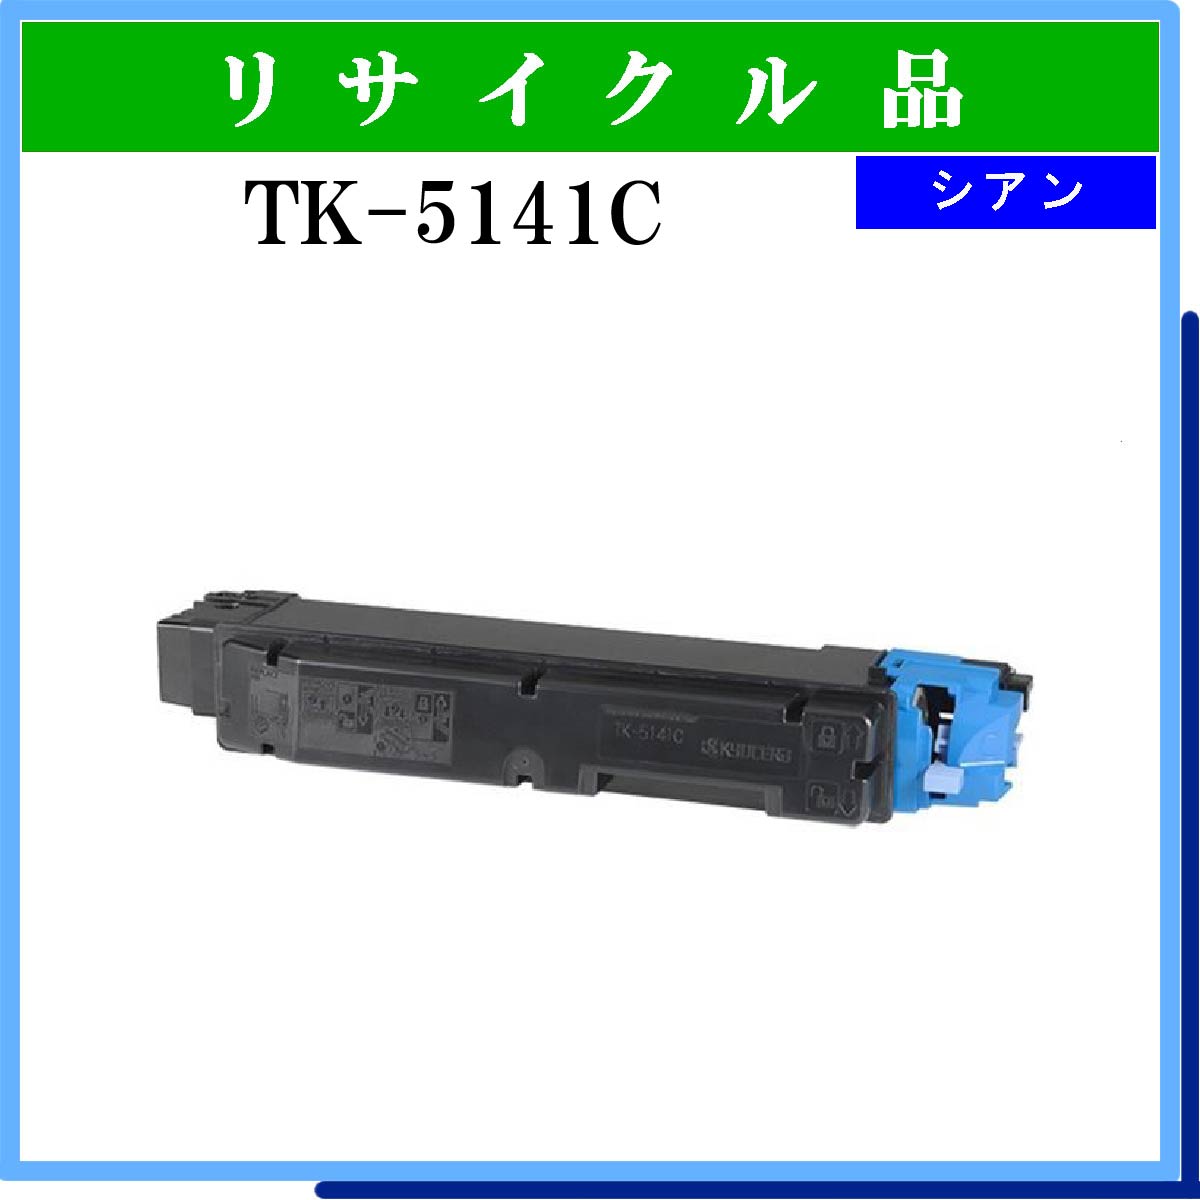 TK-5141C